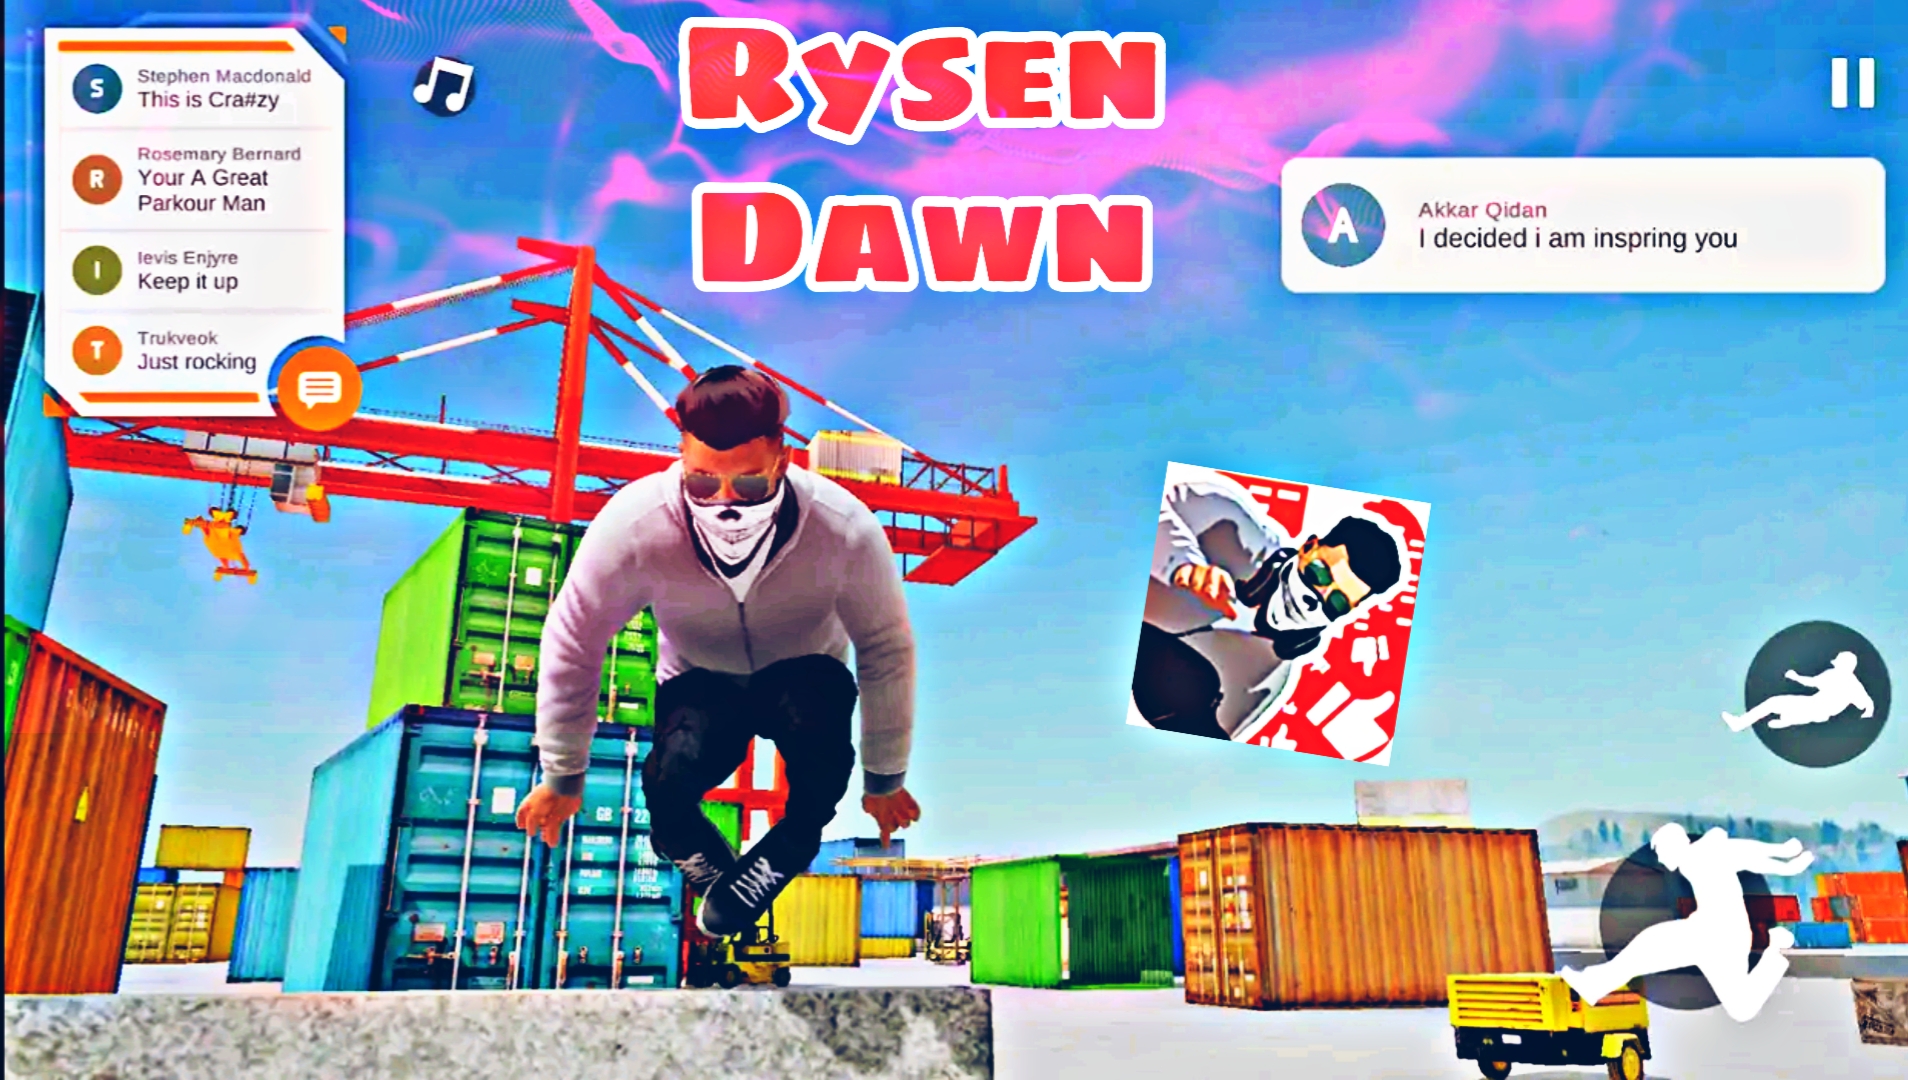 رسميا: لعبة الباركور مدهشة Ryzen Dawn جرافيك خيالي +HD